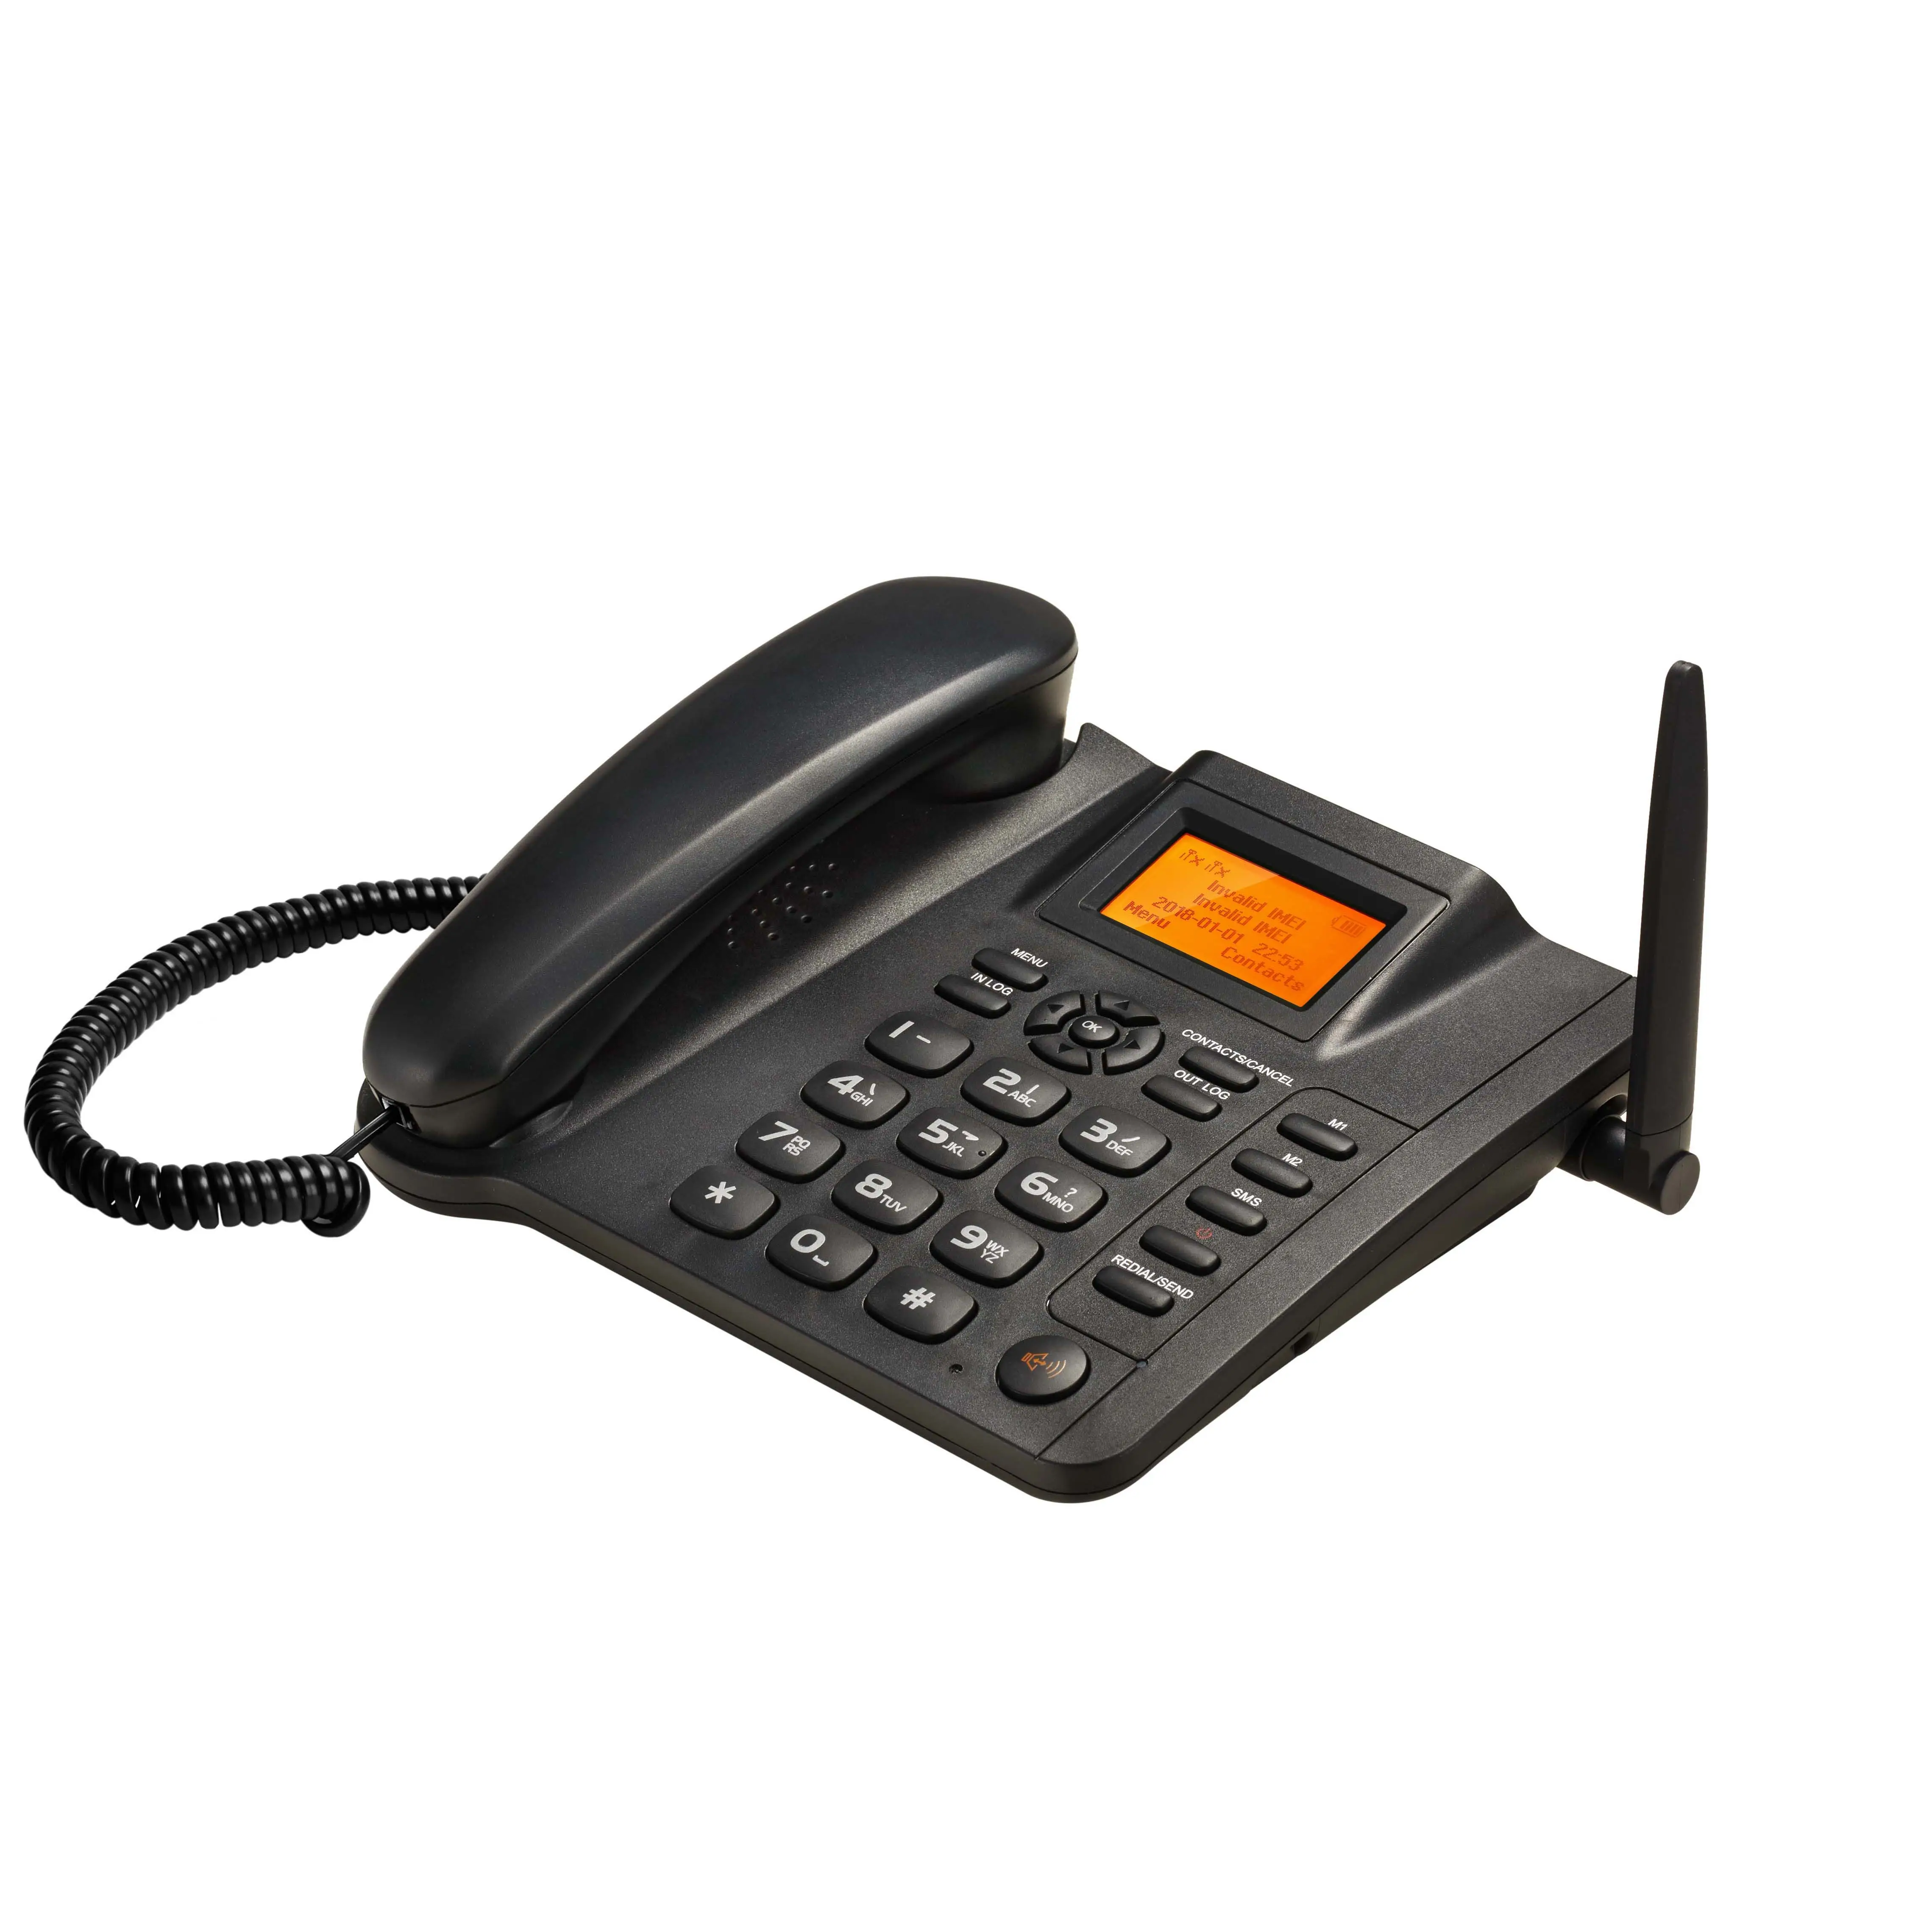 ESN-10A-teléfono de escritorio, Tarjeta SIM dual, GSM, 2g, fijo, FWP, gsm